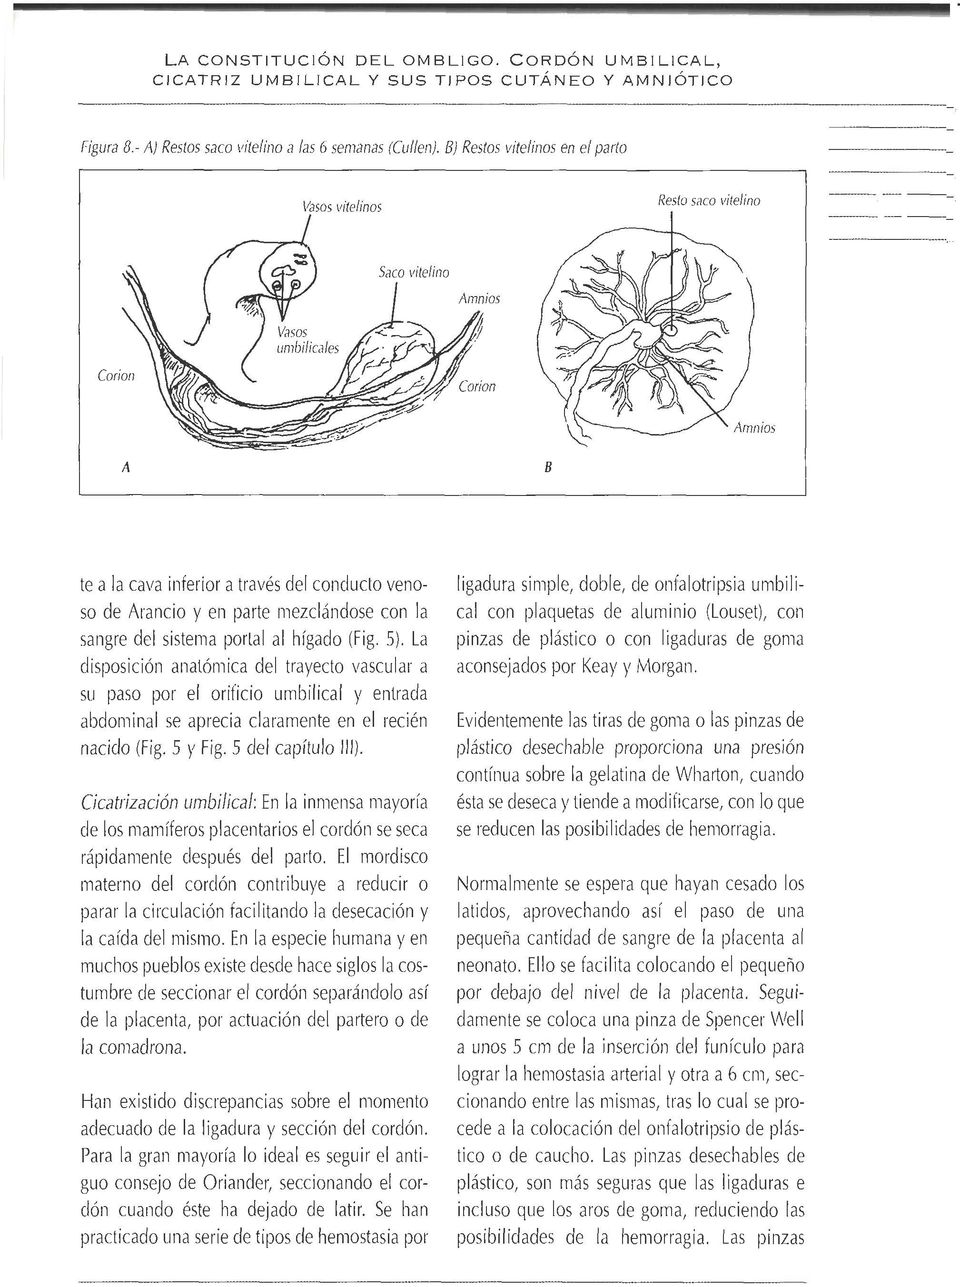 (Fig. 5). La disposición anatómica del trayecto \/ascular a su paso por el oriticio urnbilical y entrada abdominal se aprecia claramente en el recién nacido (Fig. 5 y Fig. 5 del capítulo 111).